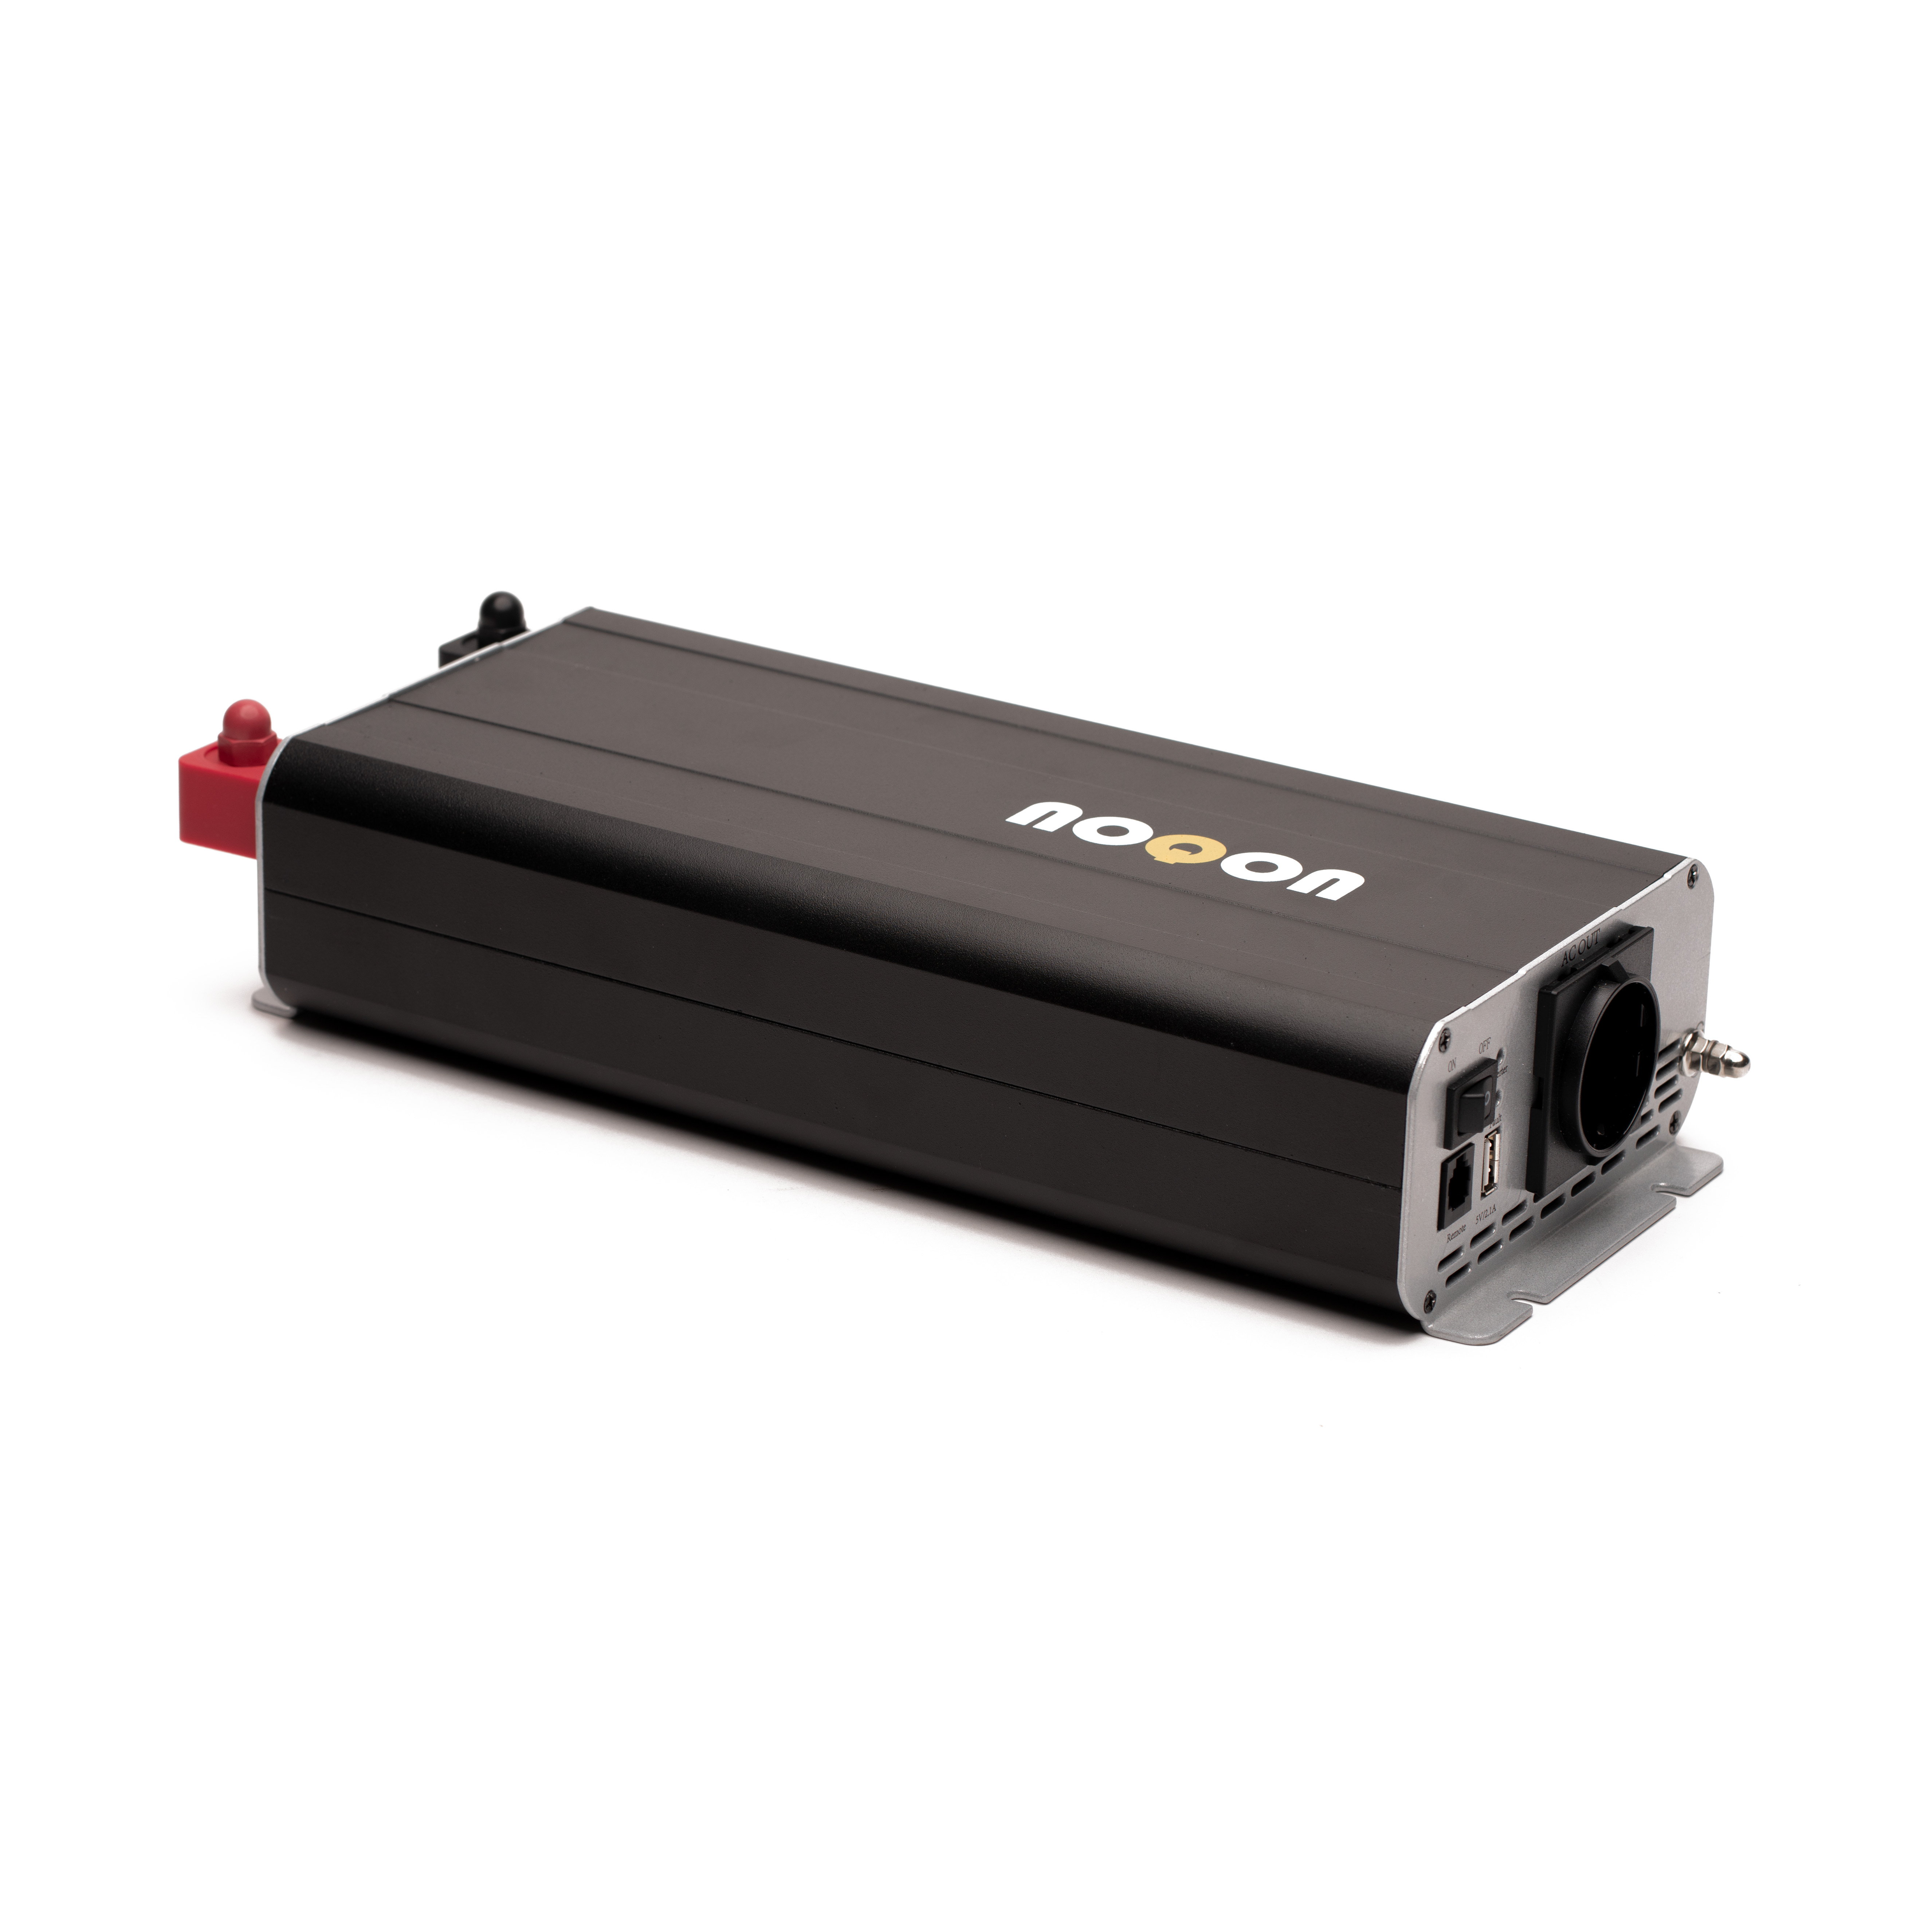 Sinus Power Inverter integrierter Netzvorrangschaltung 1000Watt 12V-2,  364,95 €